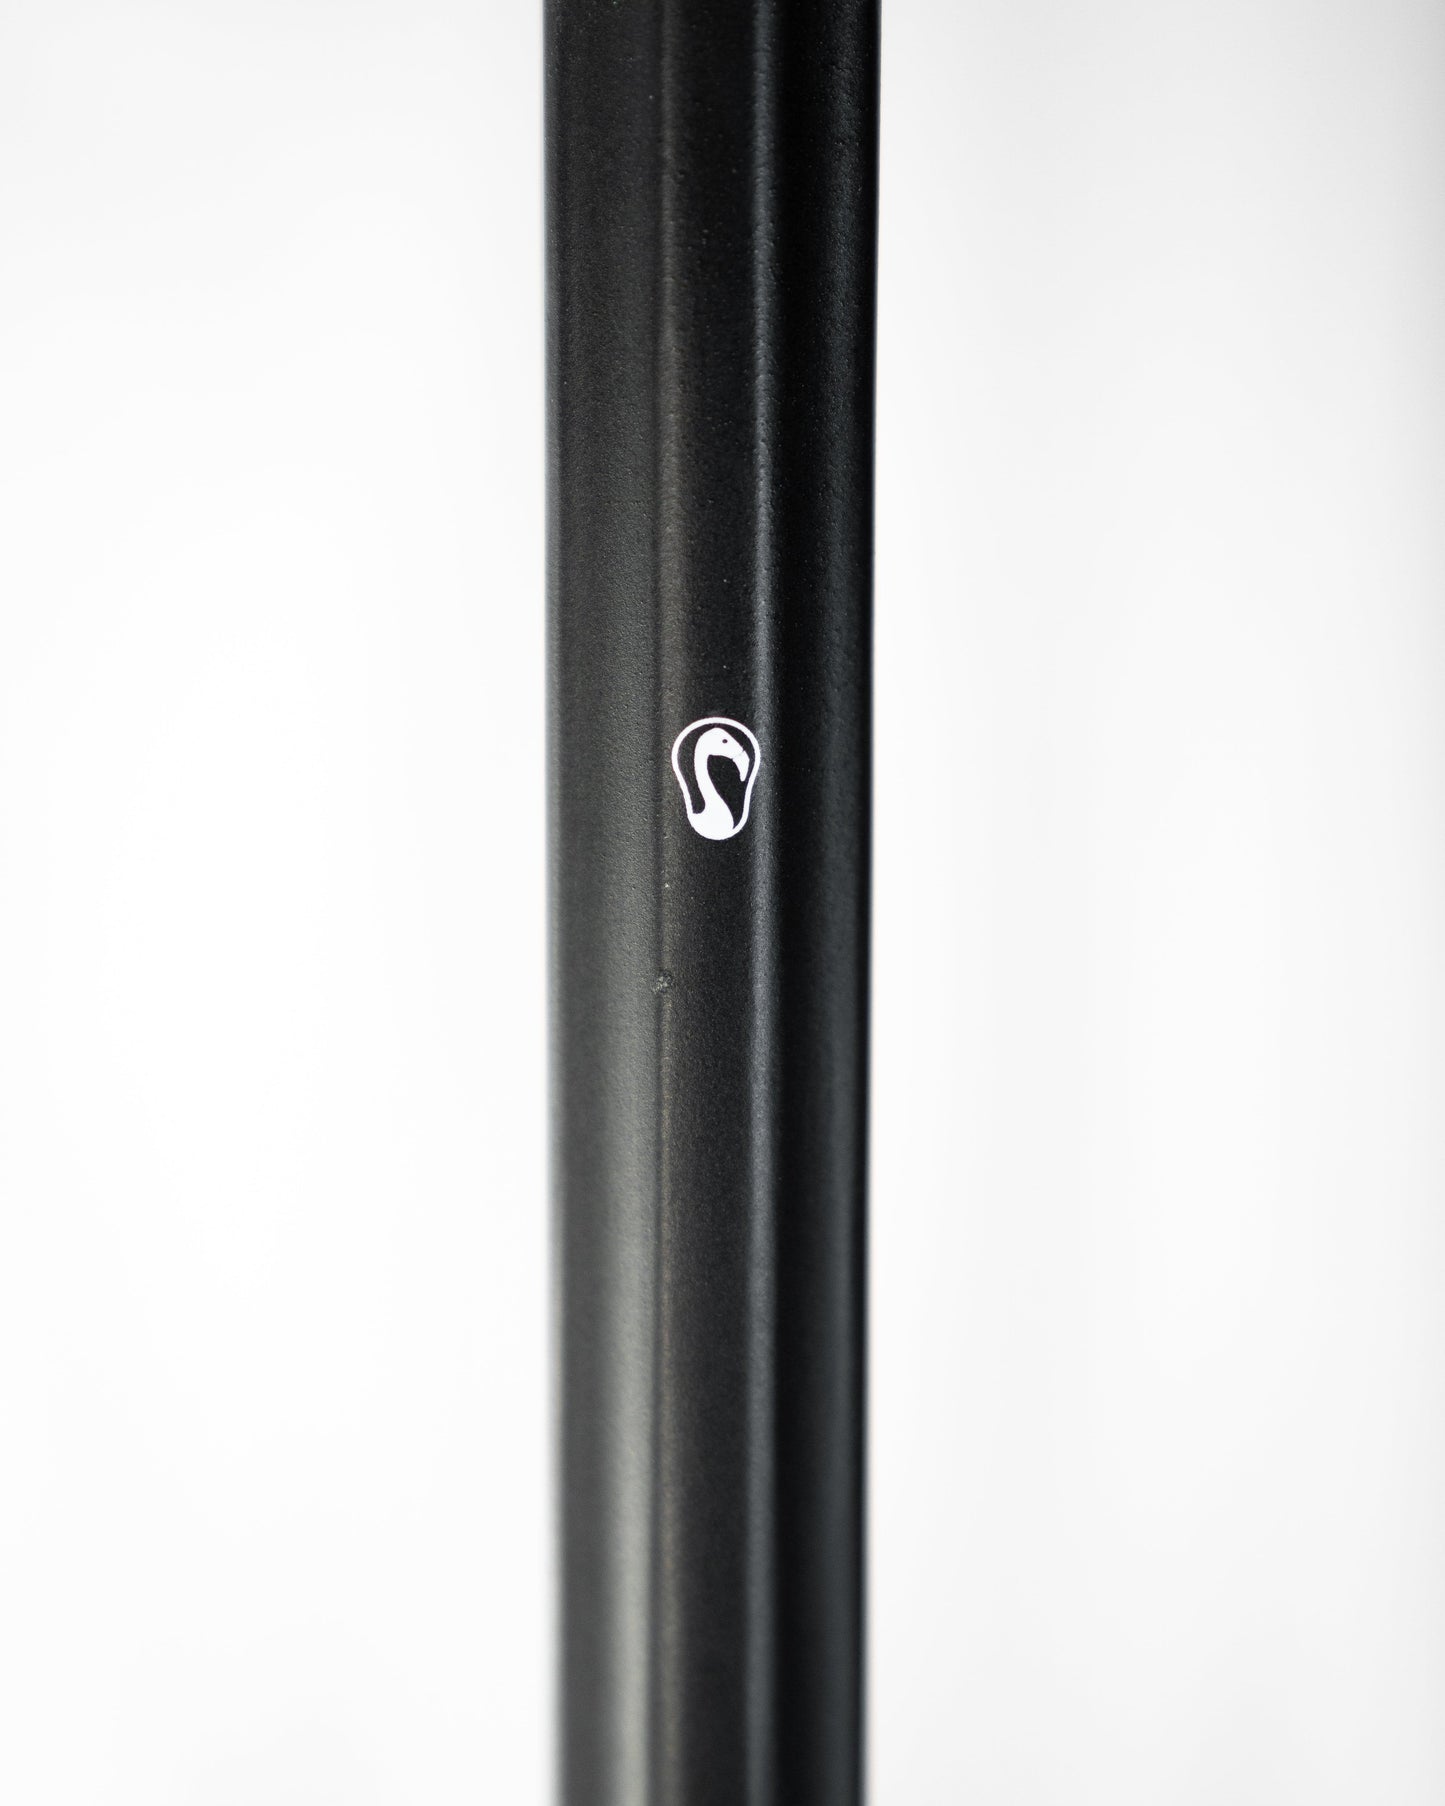 Signature The Player C30 Premium Composite Shaft | 30" | Black Signature Lacrosse